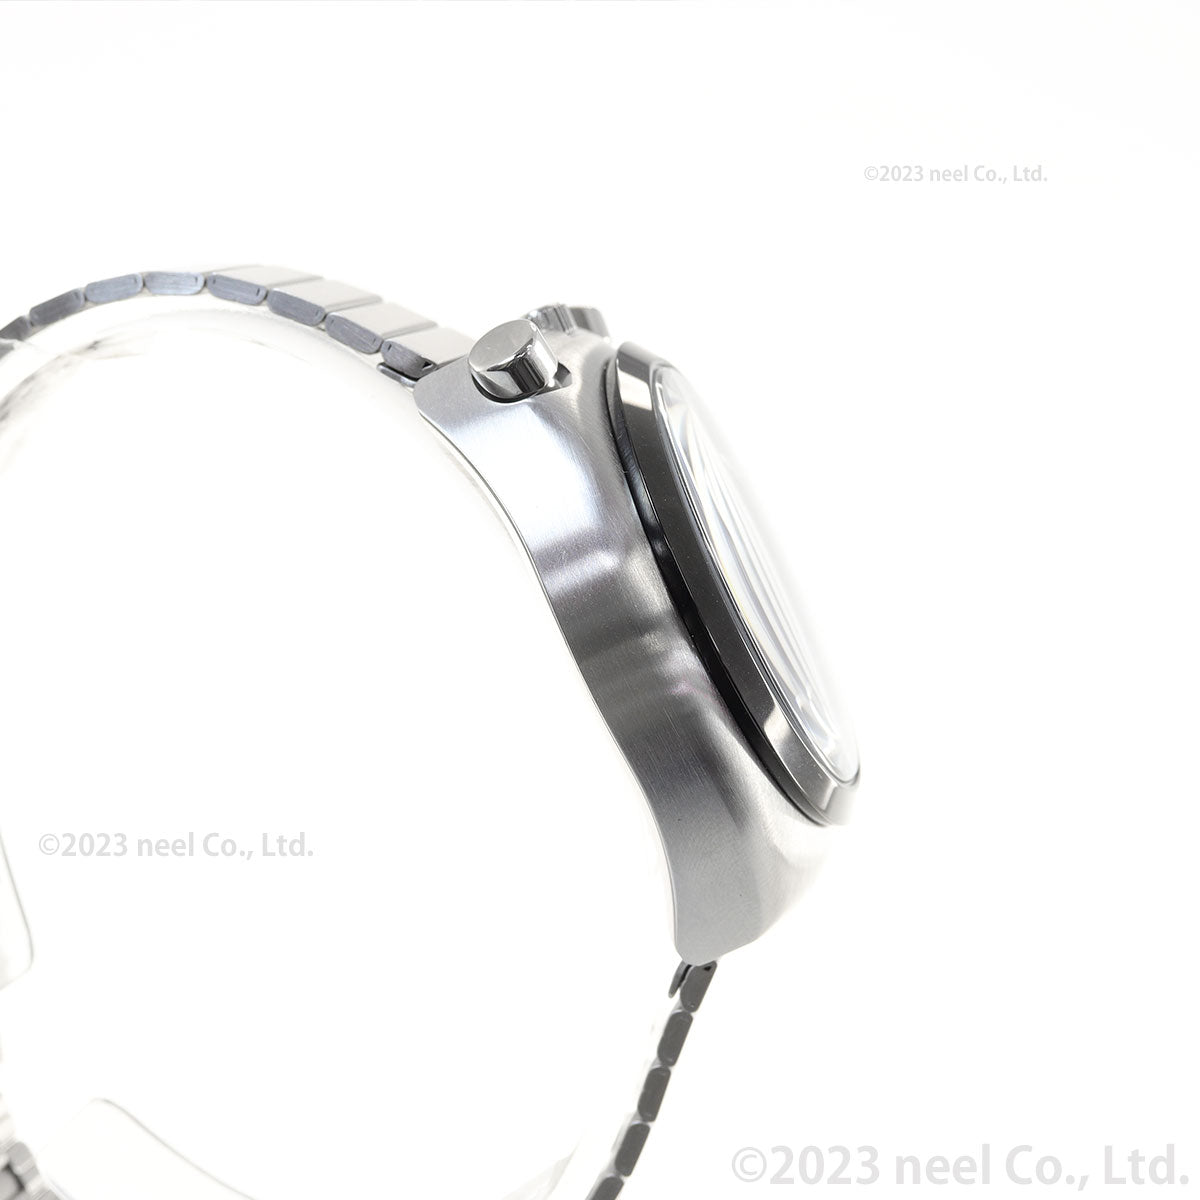 シチズンコレクション レコードレーベル ツノクロノ 特定店取扱いモデル AN3660-81E 腕時計 メンズ ブラック CITIZEN COLLECTION RECORD LABEL TSUNO CHRONO